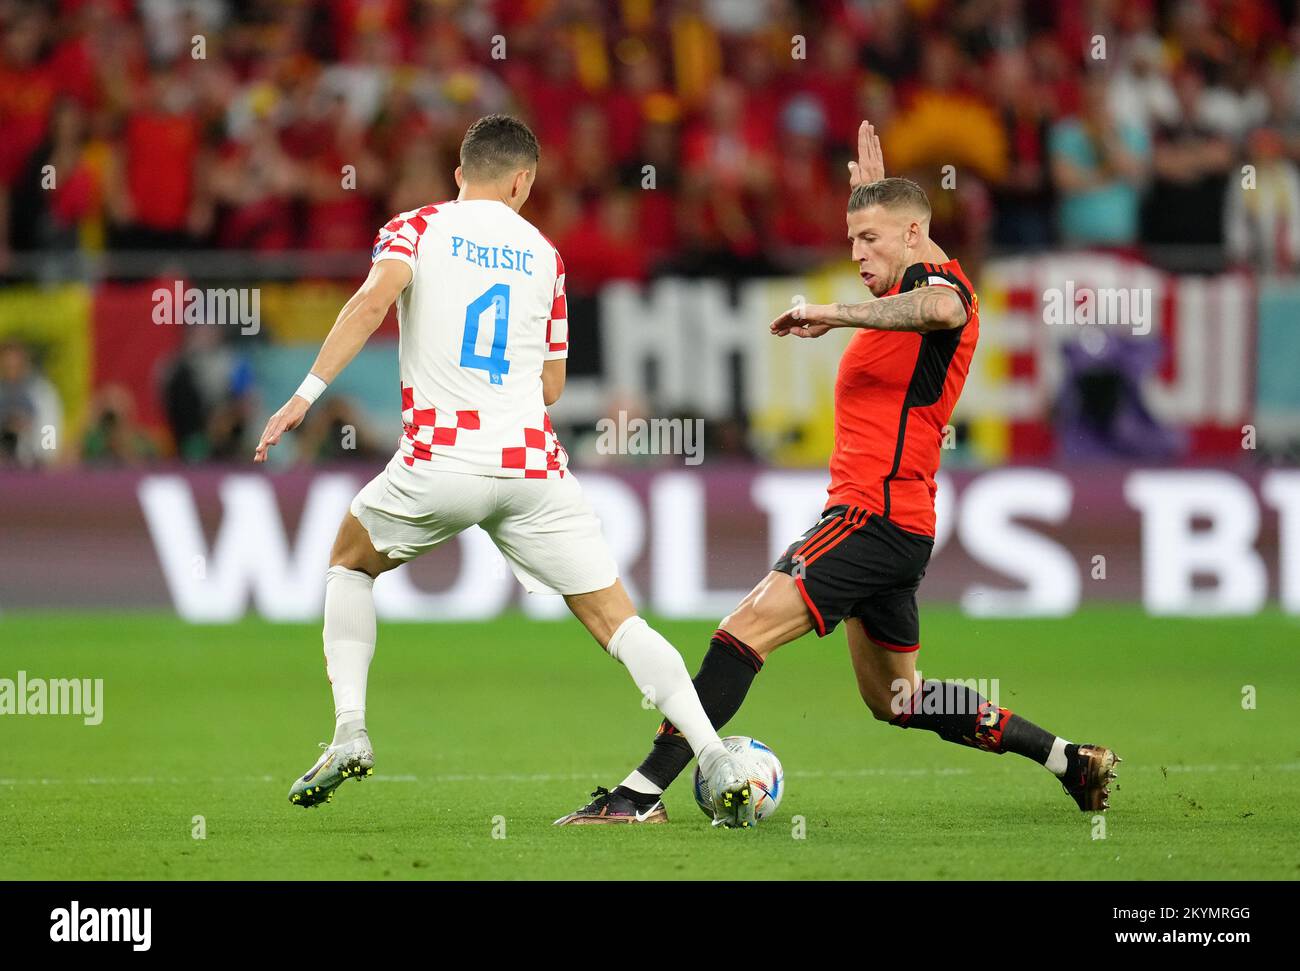 Il belga Toby Alderweireld (a destra) e la Croazia Ivan Perisic battaglia per la palla durante la partita di Coppa del mondo FIFA Group F allo stadio Ahmad Bin Ali, al Rayyan, Qatar. Data immagine: Giovedì 1 dicembre 2022. Foto Stock